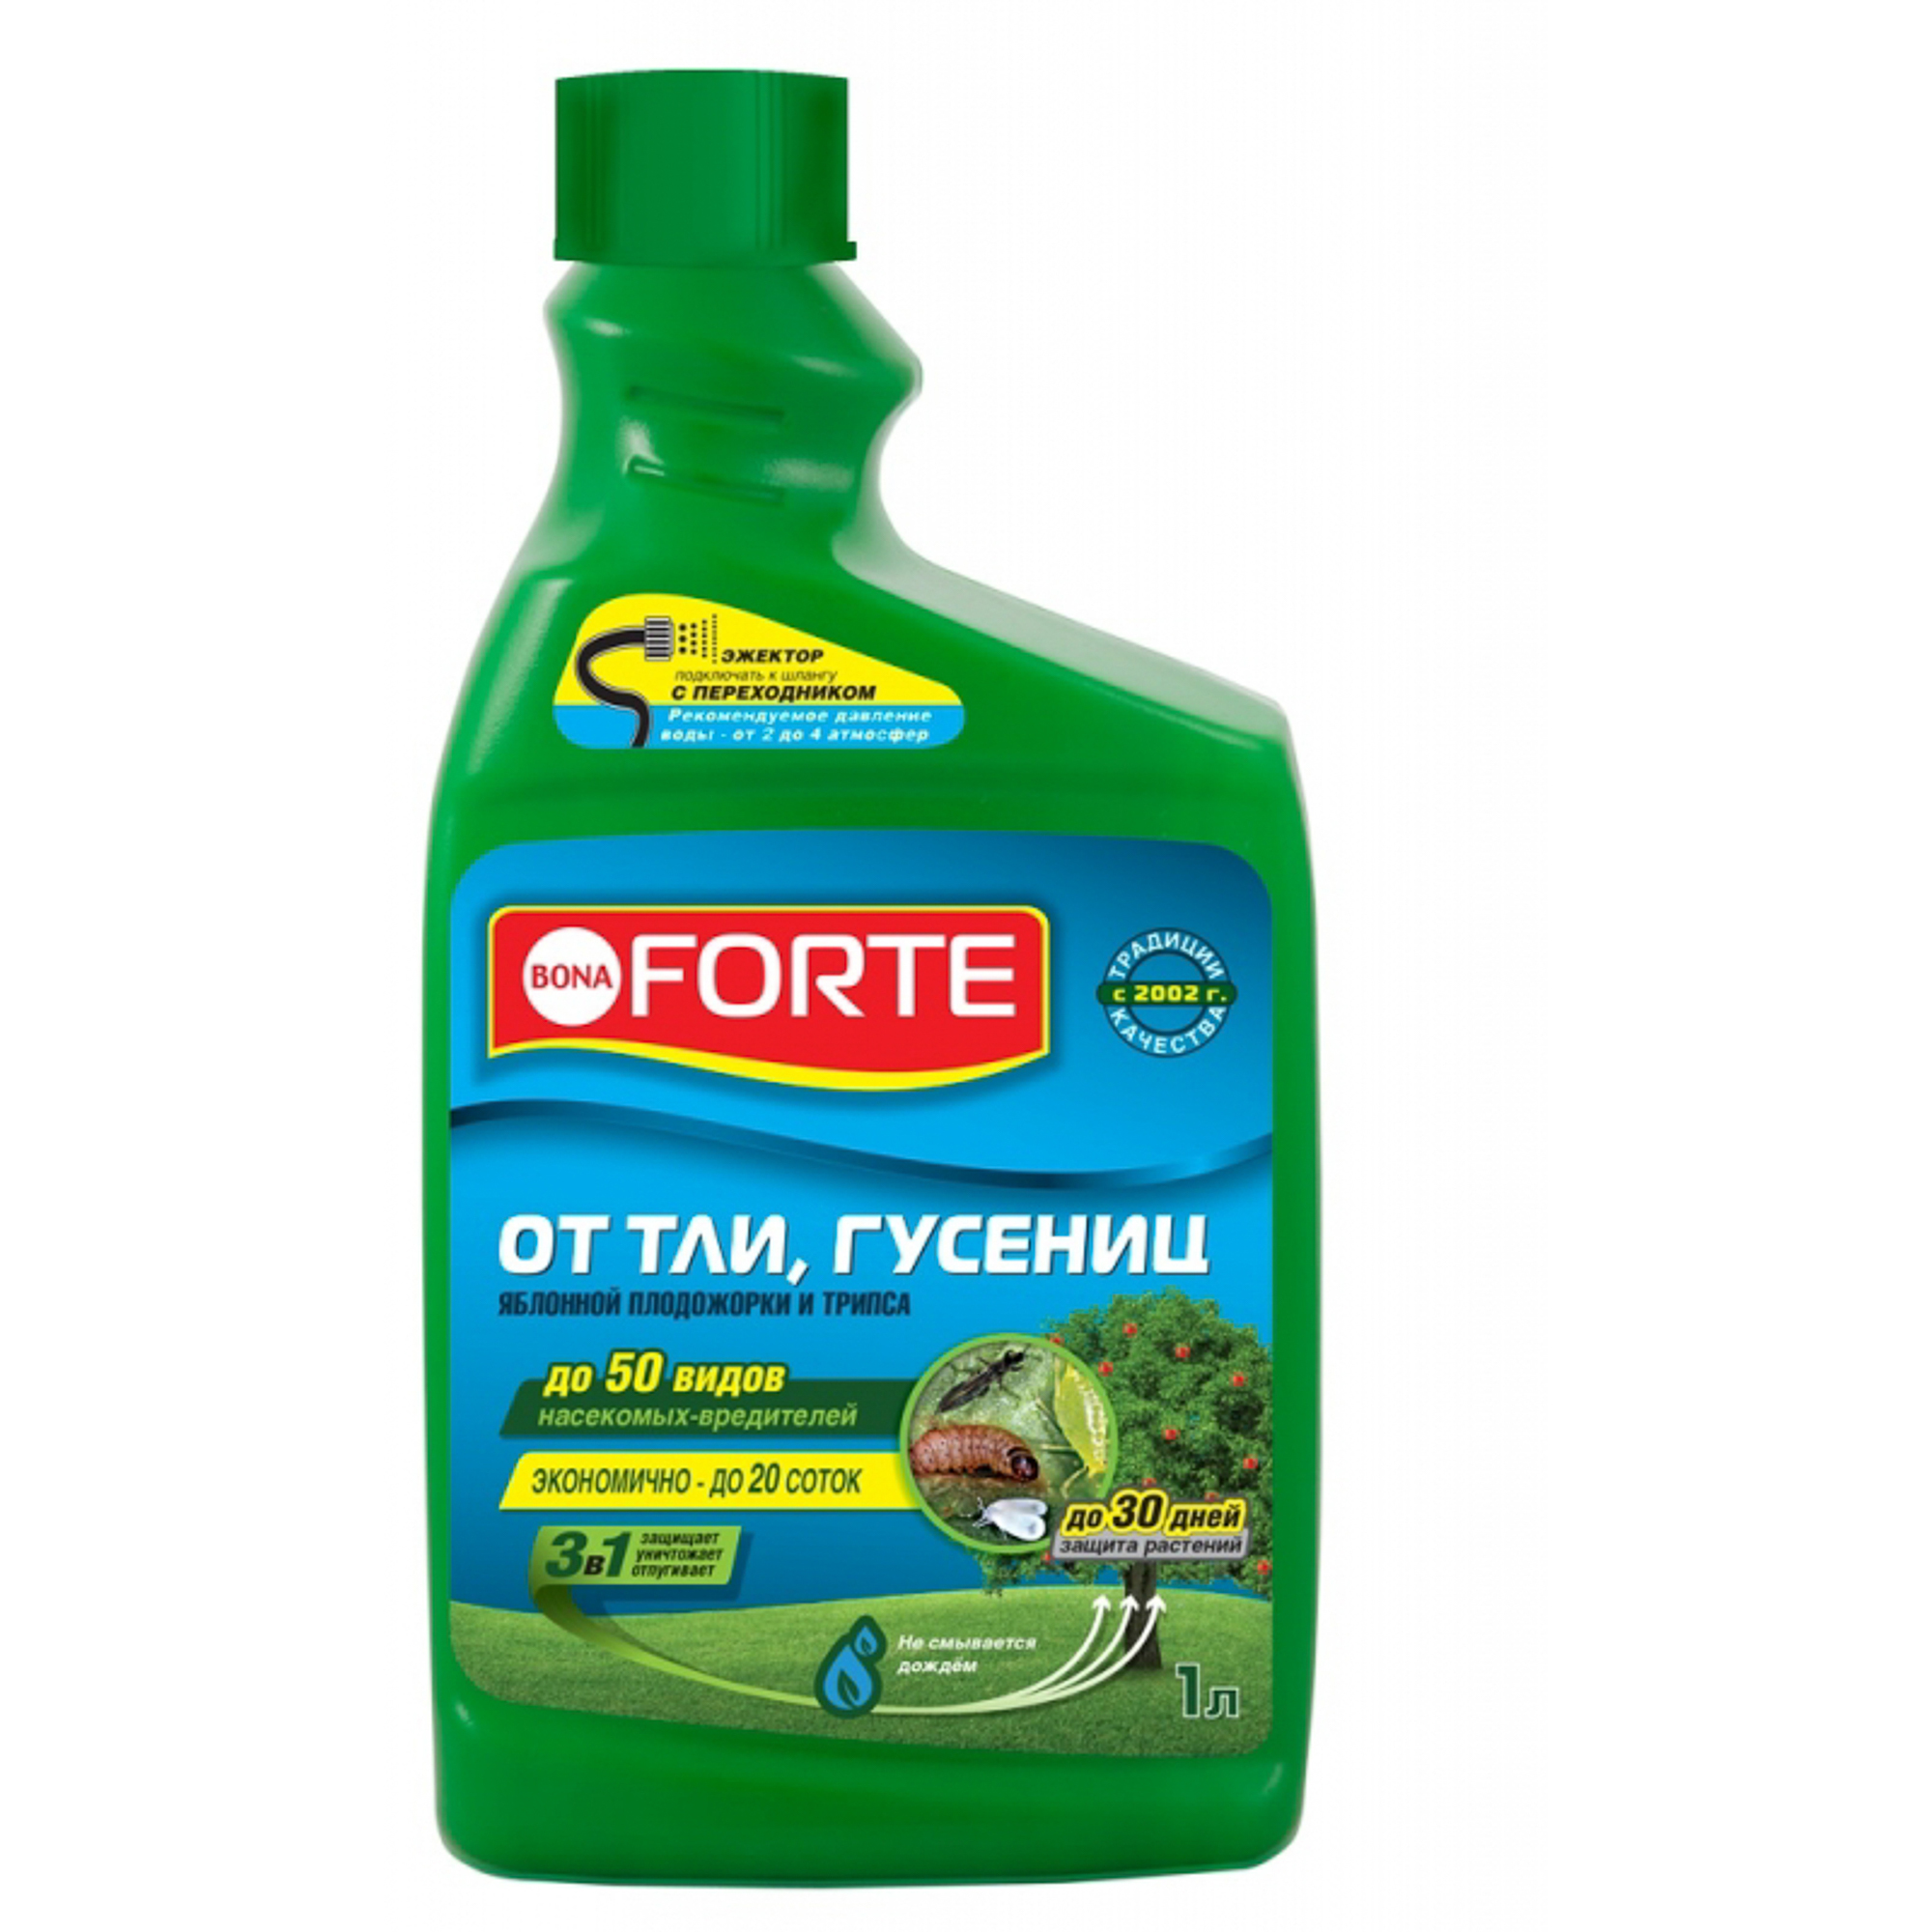 Средство Bona Forte от ТЛИ, ГУСЕНИЦ и других насекомых, запасной флакон 1 л